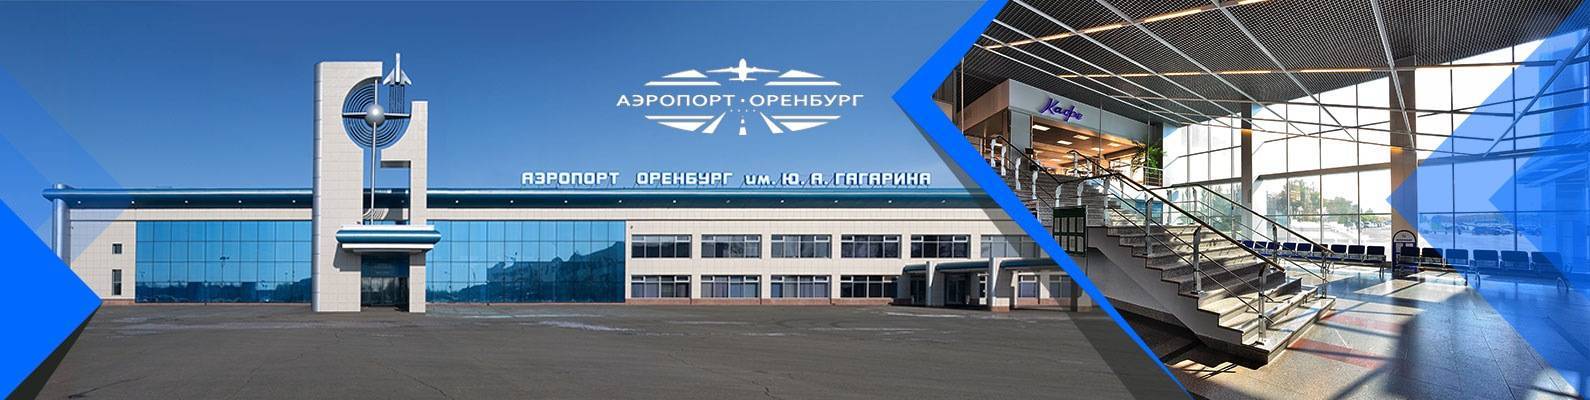 Аэропорт оренбург центральный: расписание рейсов на онлайн-табло, фото, отзывы и адрес